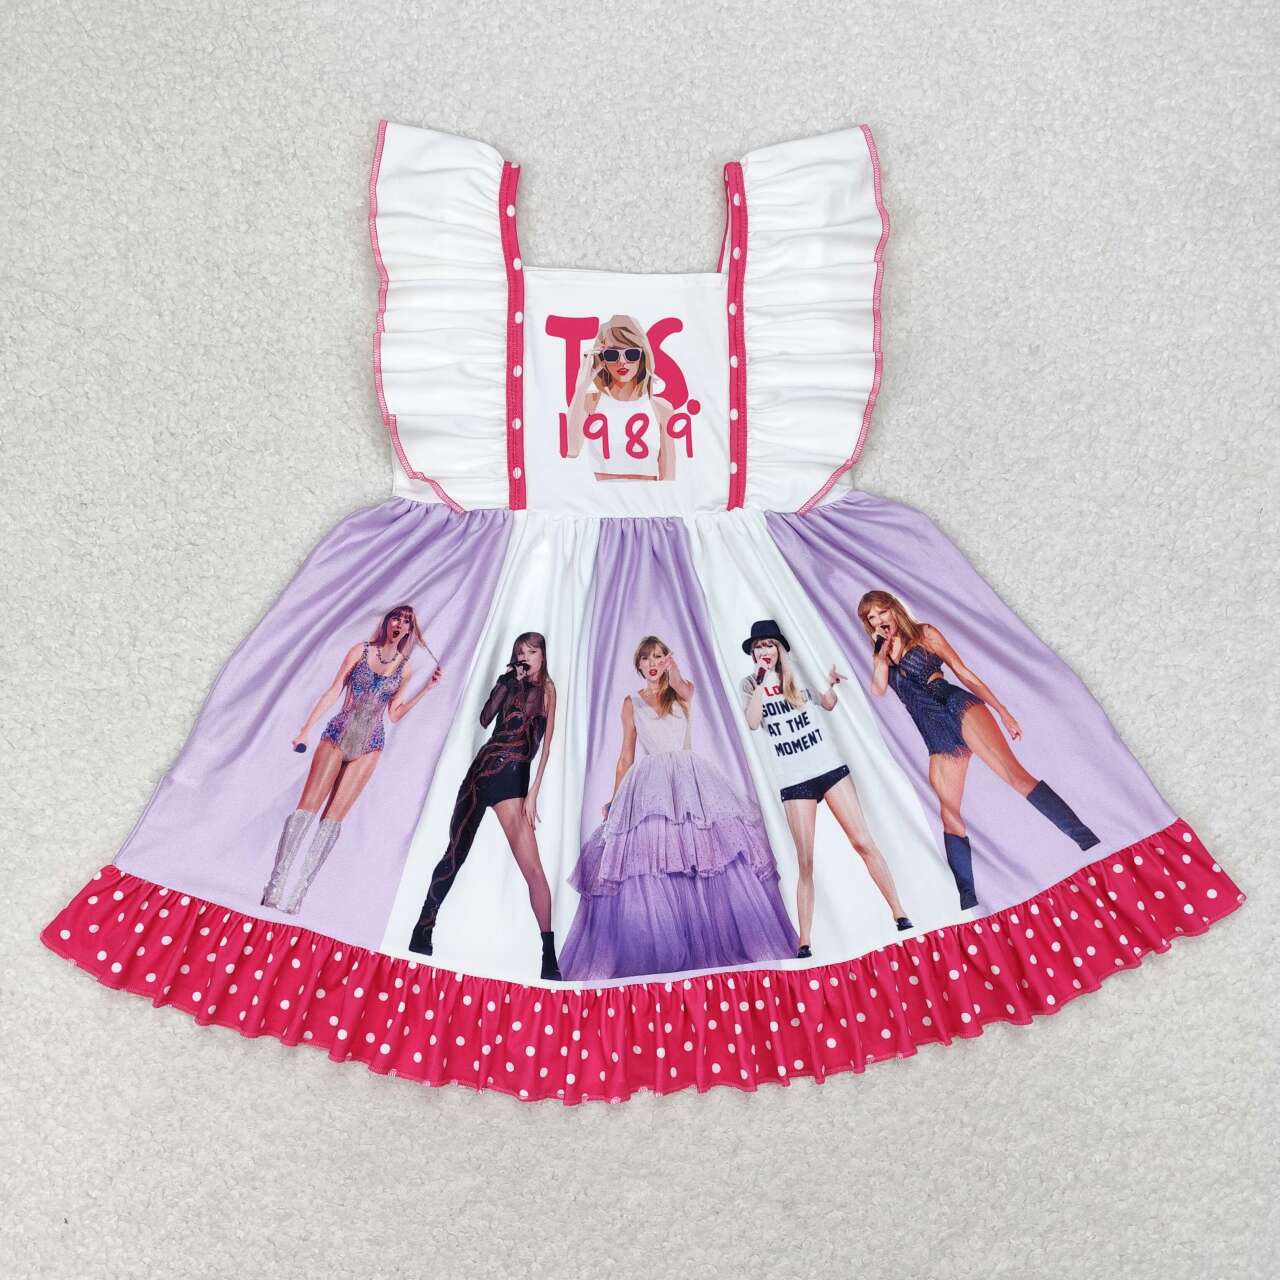 Baby Girls TS Singer 1989 Dress